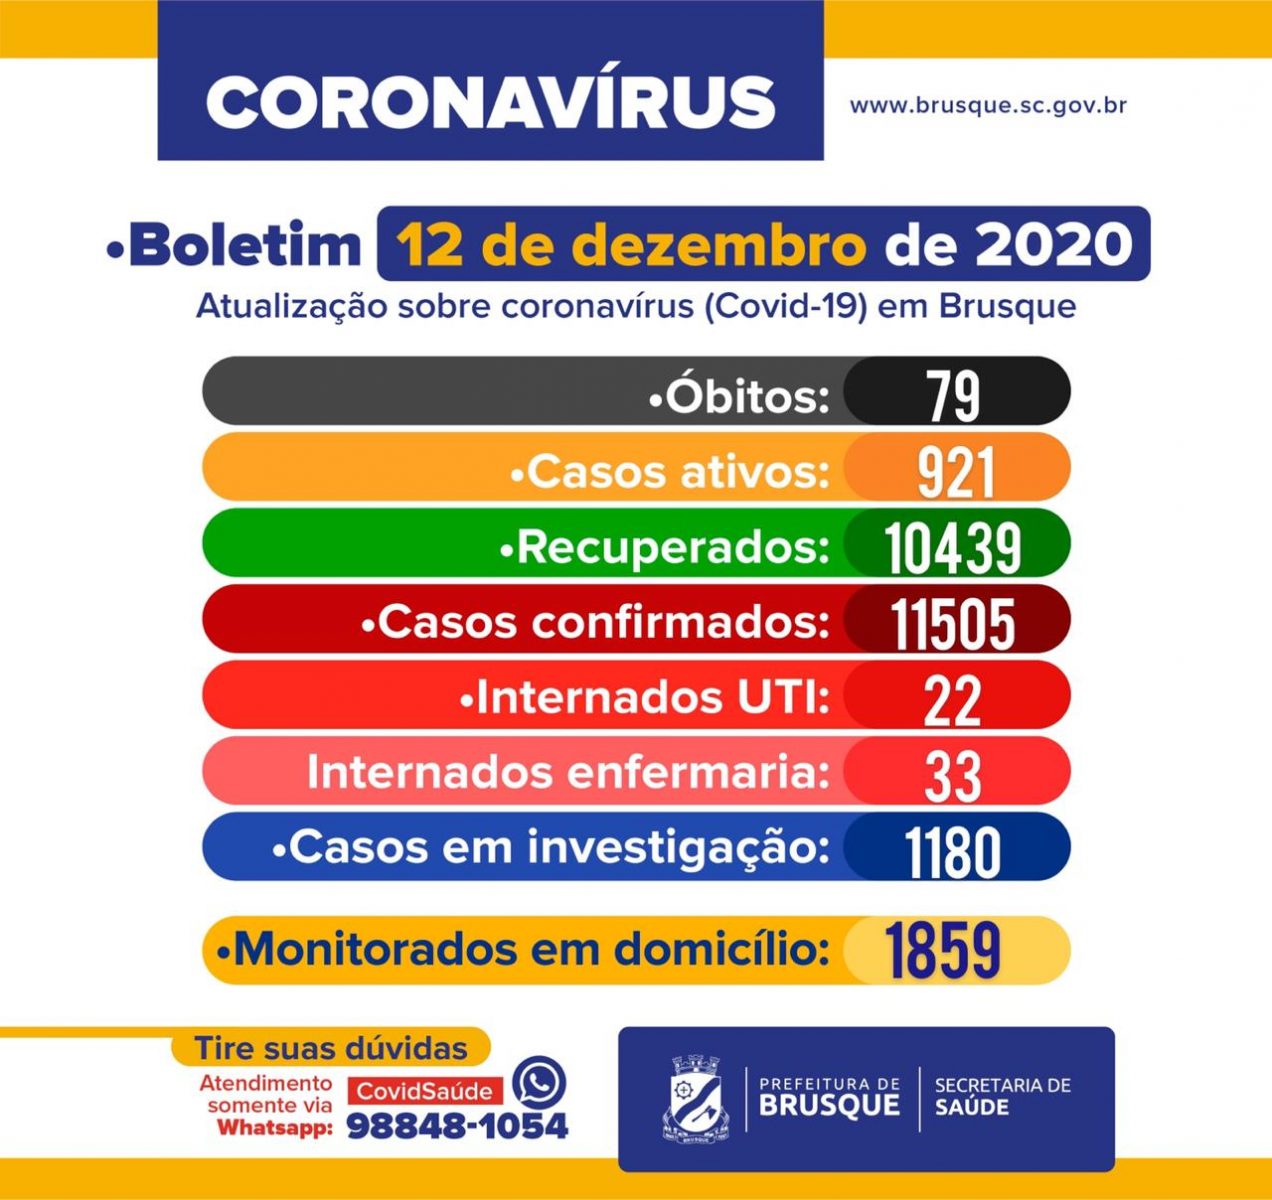 Brusque registra mais uma morte por coronavírus. Confira o boletim epidemiológico deste sábado (12)